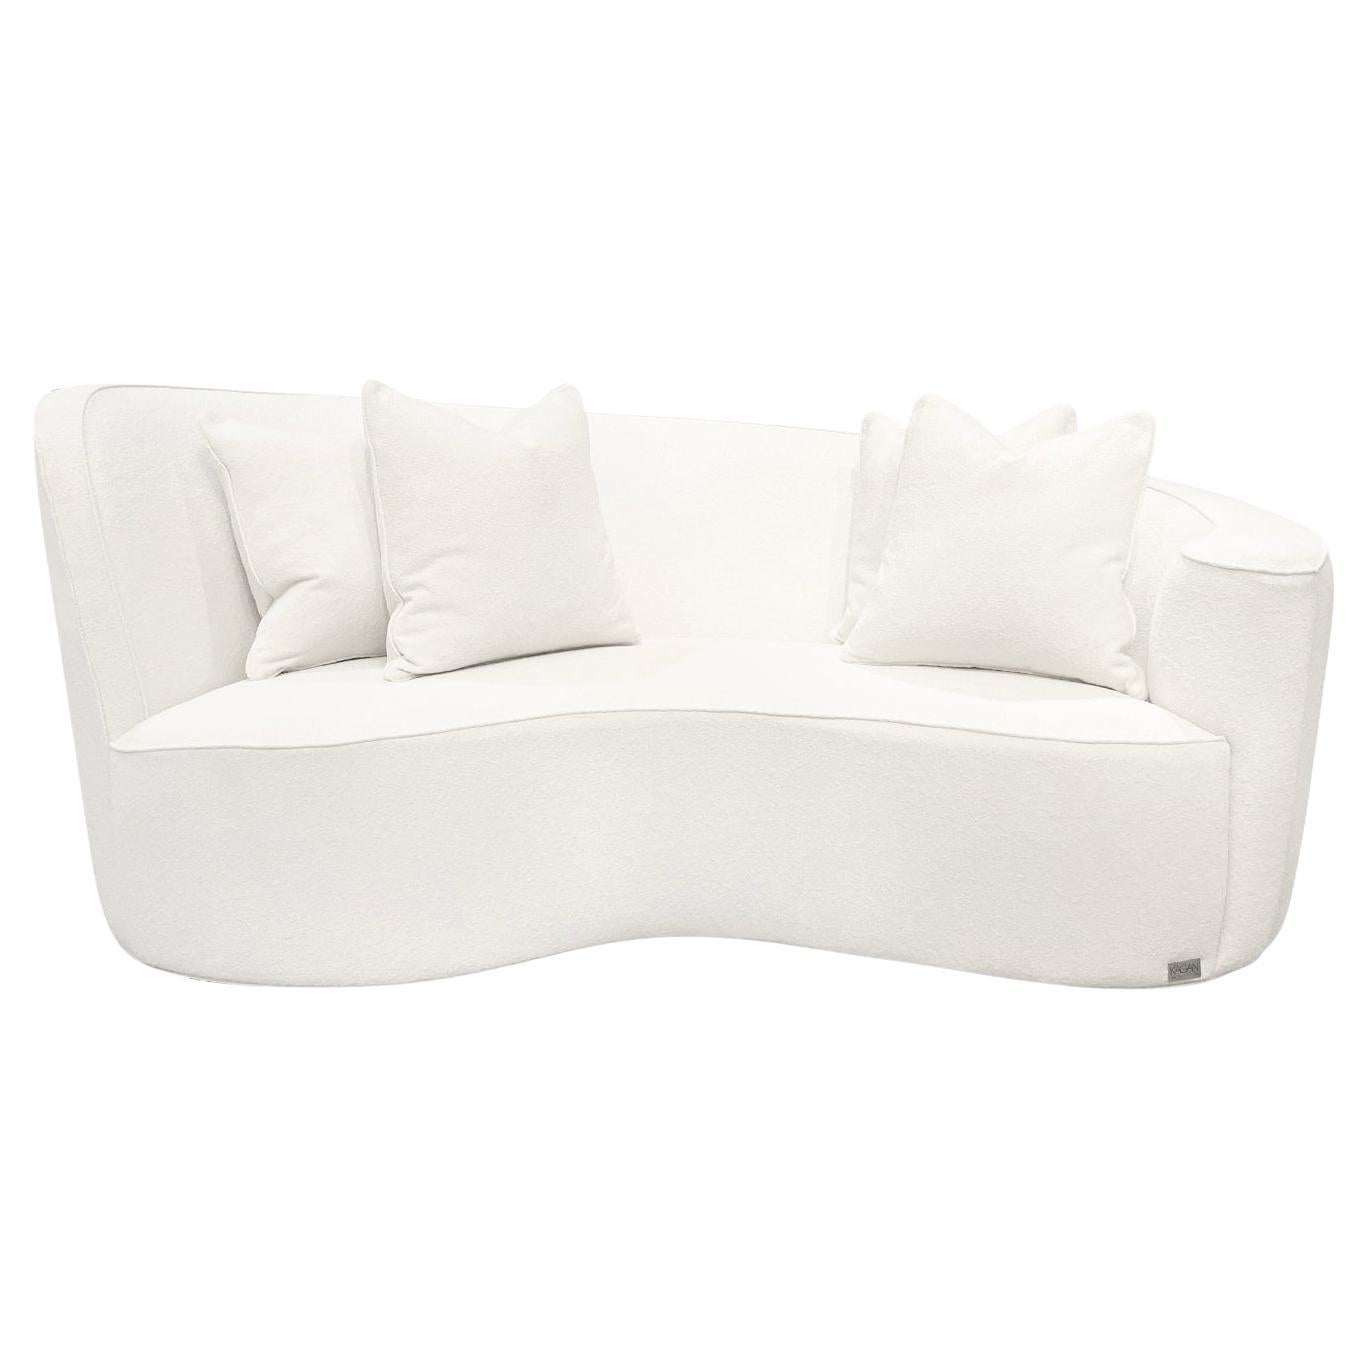 Weißes amerikanisches Viersitzer-Sofa des 20. Jahrhunderts – Vintage-Sessel von Vladimir Kagan